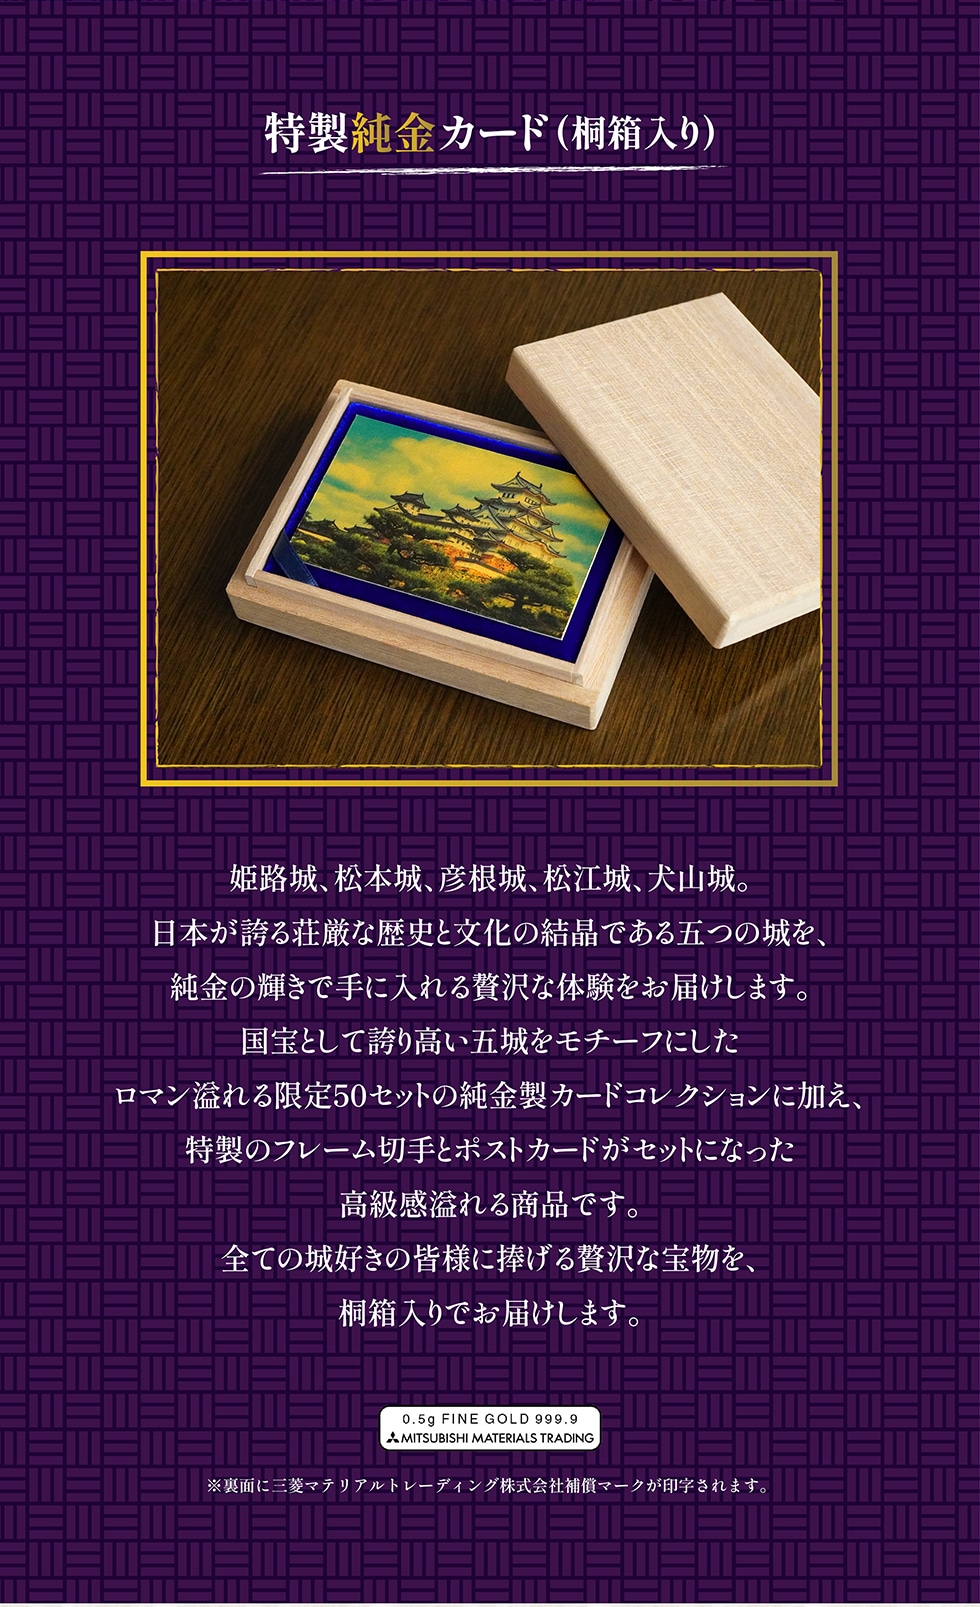 特製純金カード(桐箱入り) 姫路城、松本城、彦根城、松江城、犬山城。 日本が誇る荘厳な歴史と文化の結晶である五つの城を、 純金の輝きで手に入れる贅沢な体験をお届けします。 国宝として誇り高い五城をモチーフにしたロマン溢れる限定50セットの純金製カードコレクションに加え、 特製のフレーム切手とポストカードがセットになった高級感溢れる商品です。全ての城好きの皆様に捧げる贅沢な宝物を、桐箱入りでお届けします。※裏面に三菱マテリアルトレーディング株式会社補償マークが印字されます。